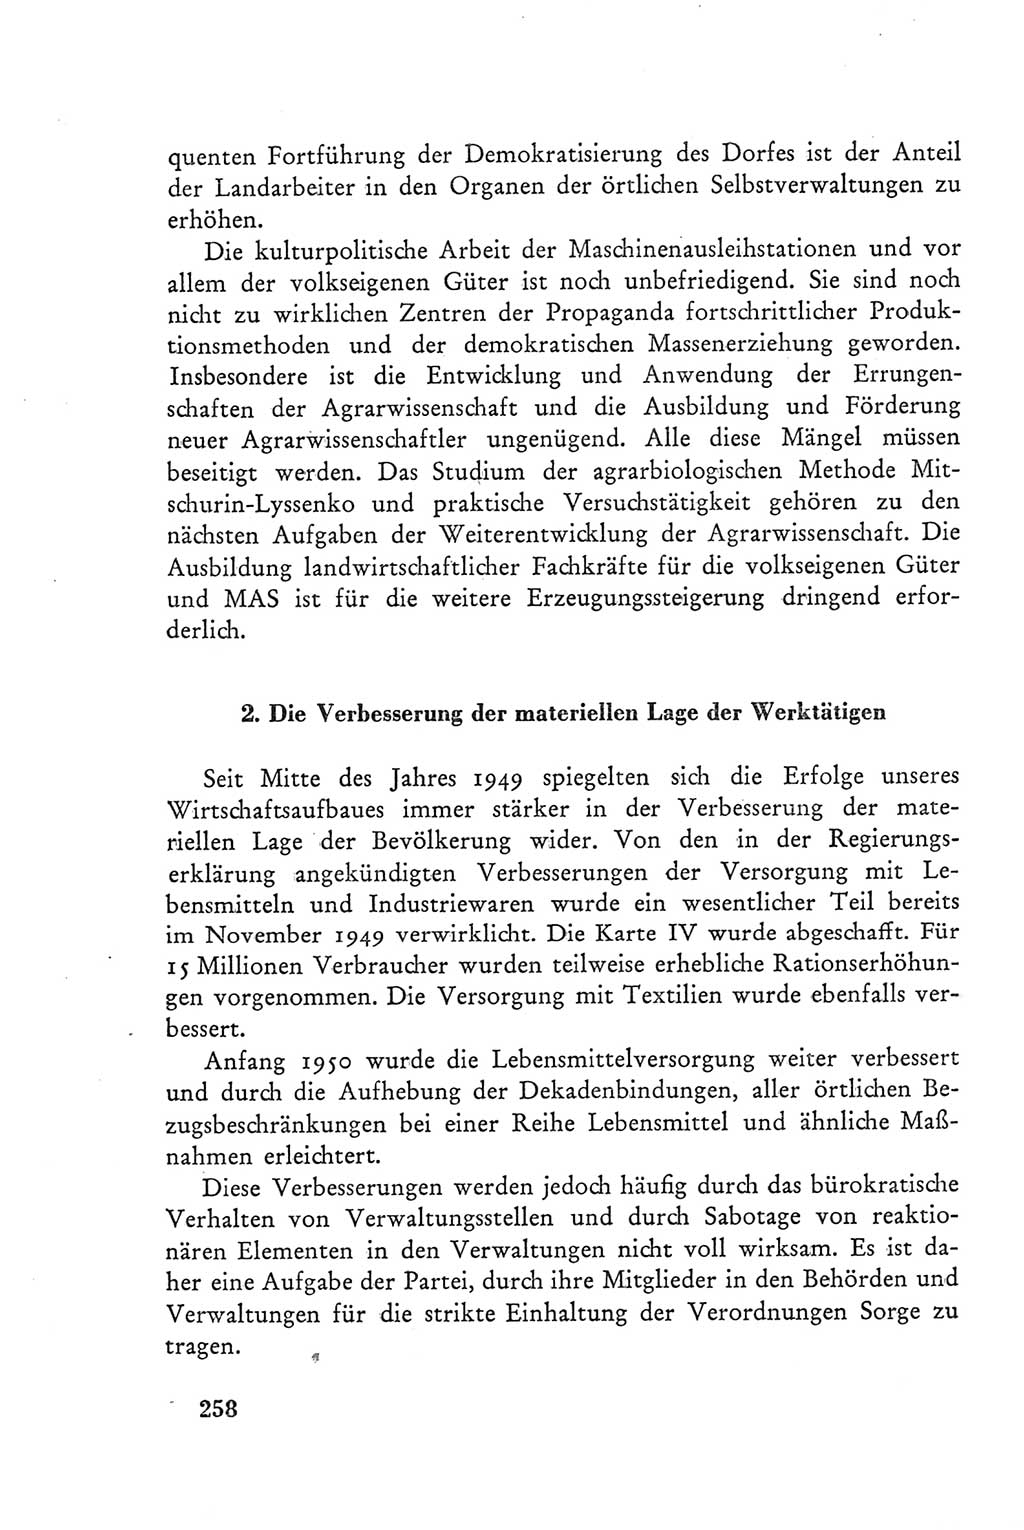 Protokoll der Verhandlungen des Ⅲ. Parteitages der Sozialistischen Einheitspartei Deutschlands (SED) [Deutsche Demokratische Republik (DDR)] 1950, Band 2, Seite 258 (Prot. Verh. Ⅲ. PT SED DDR 1950, Bd. 2, S. 258)